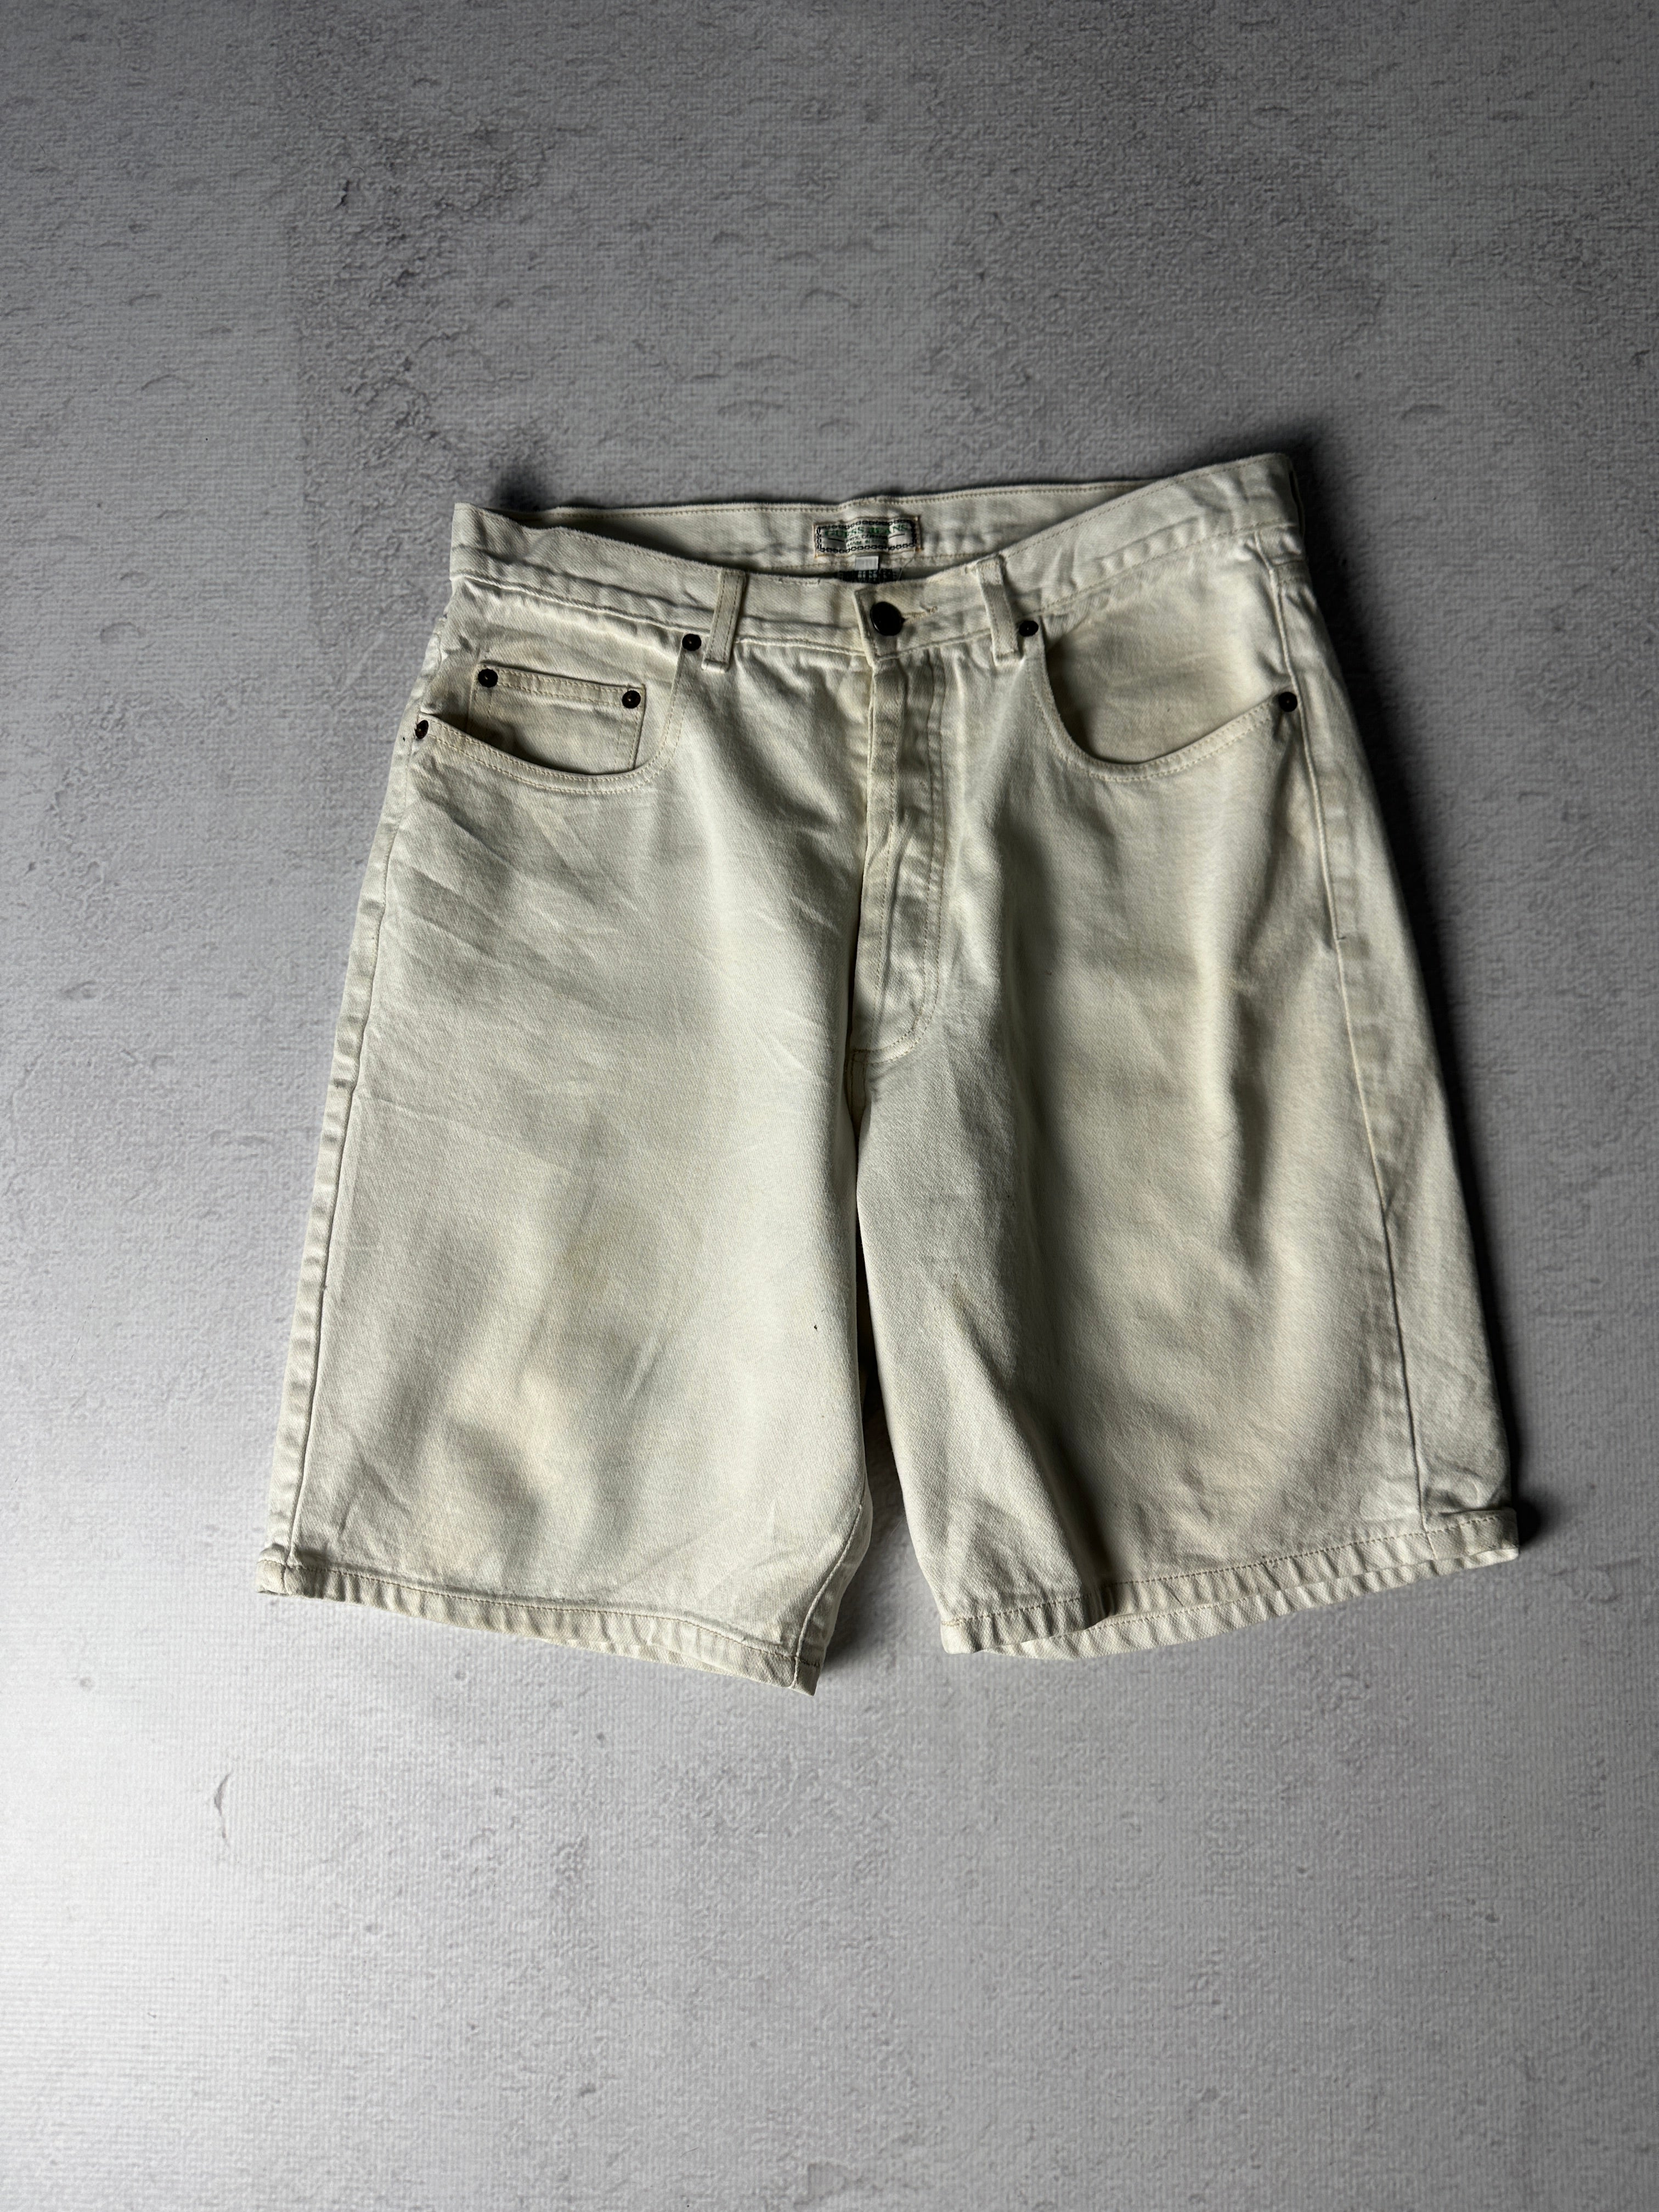 Vintage Guess Jean Shorts - Men's 34